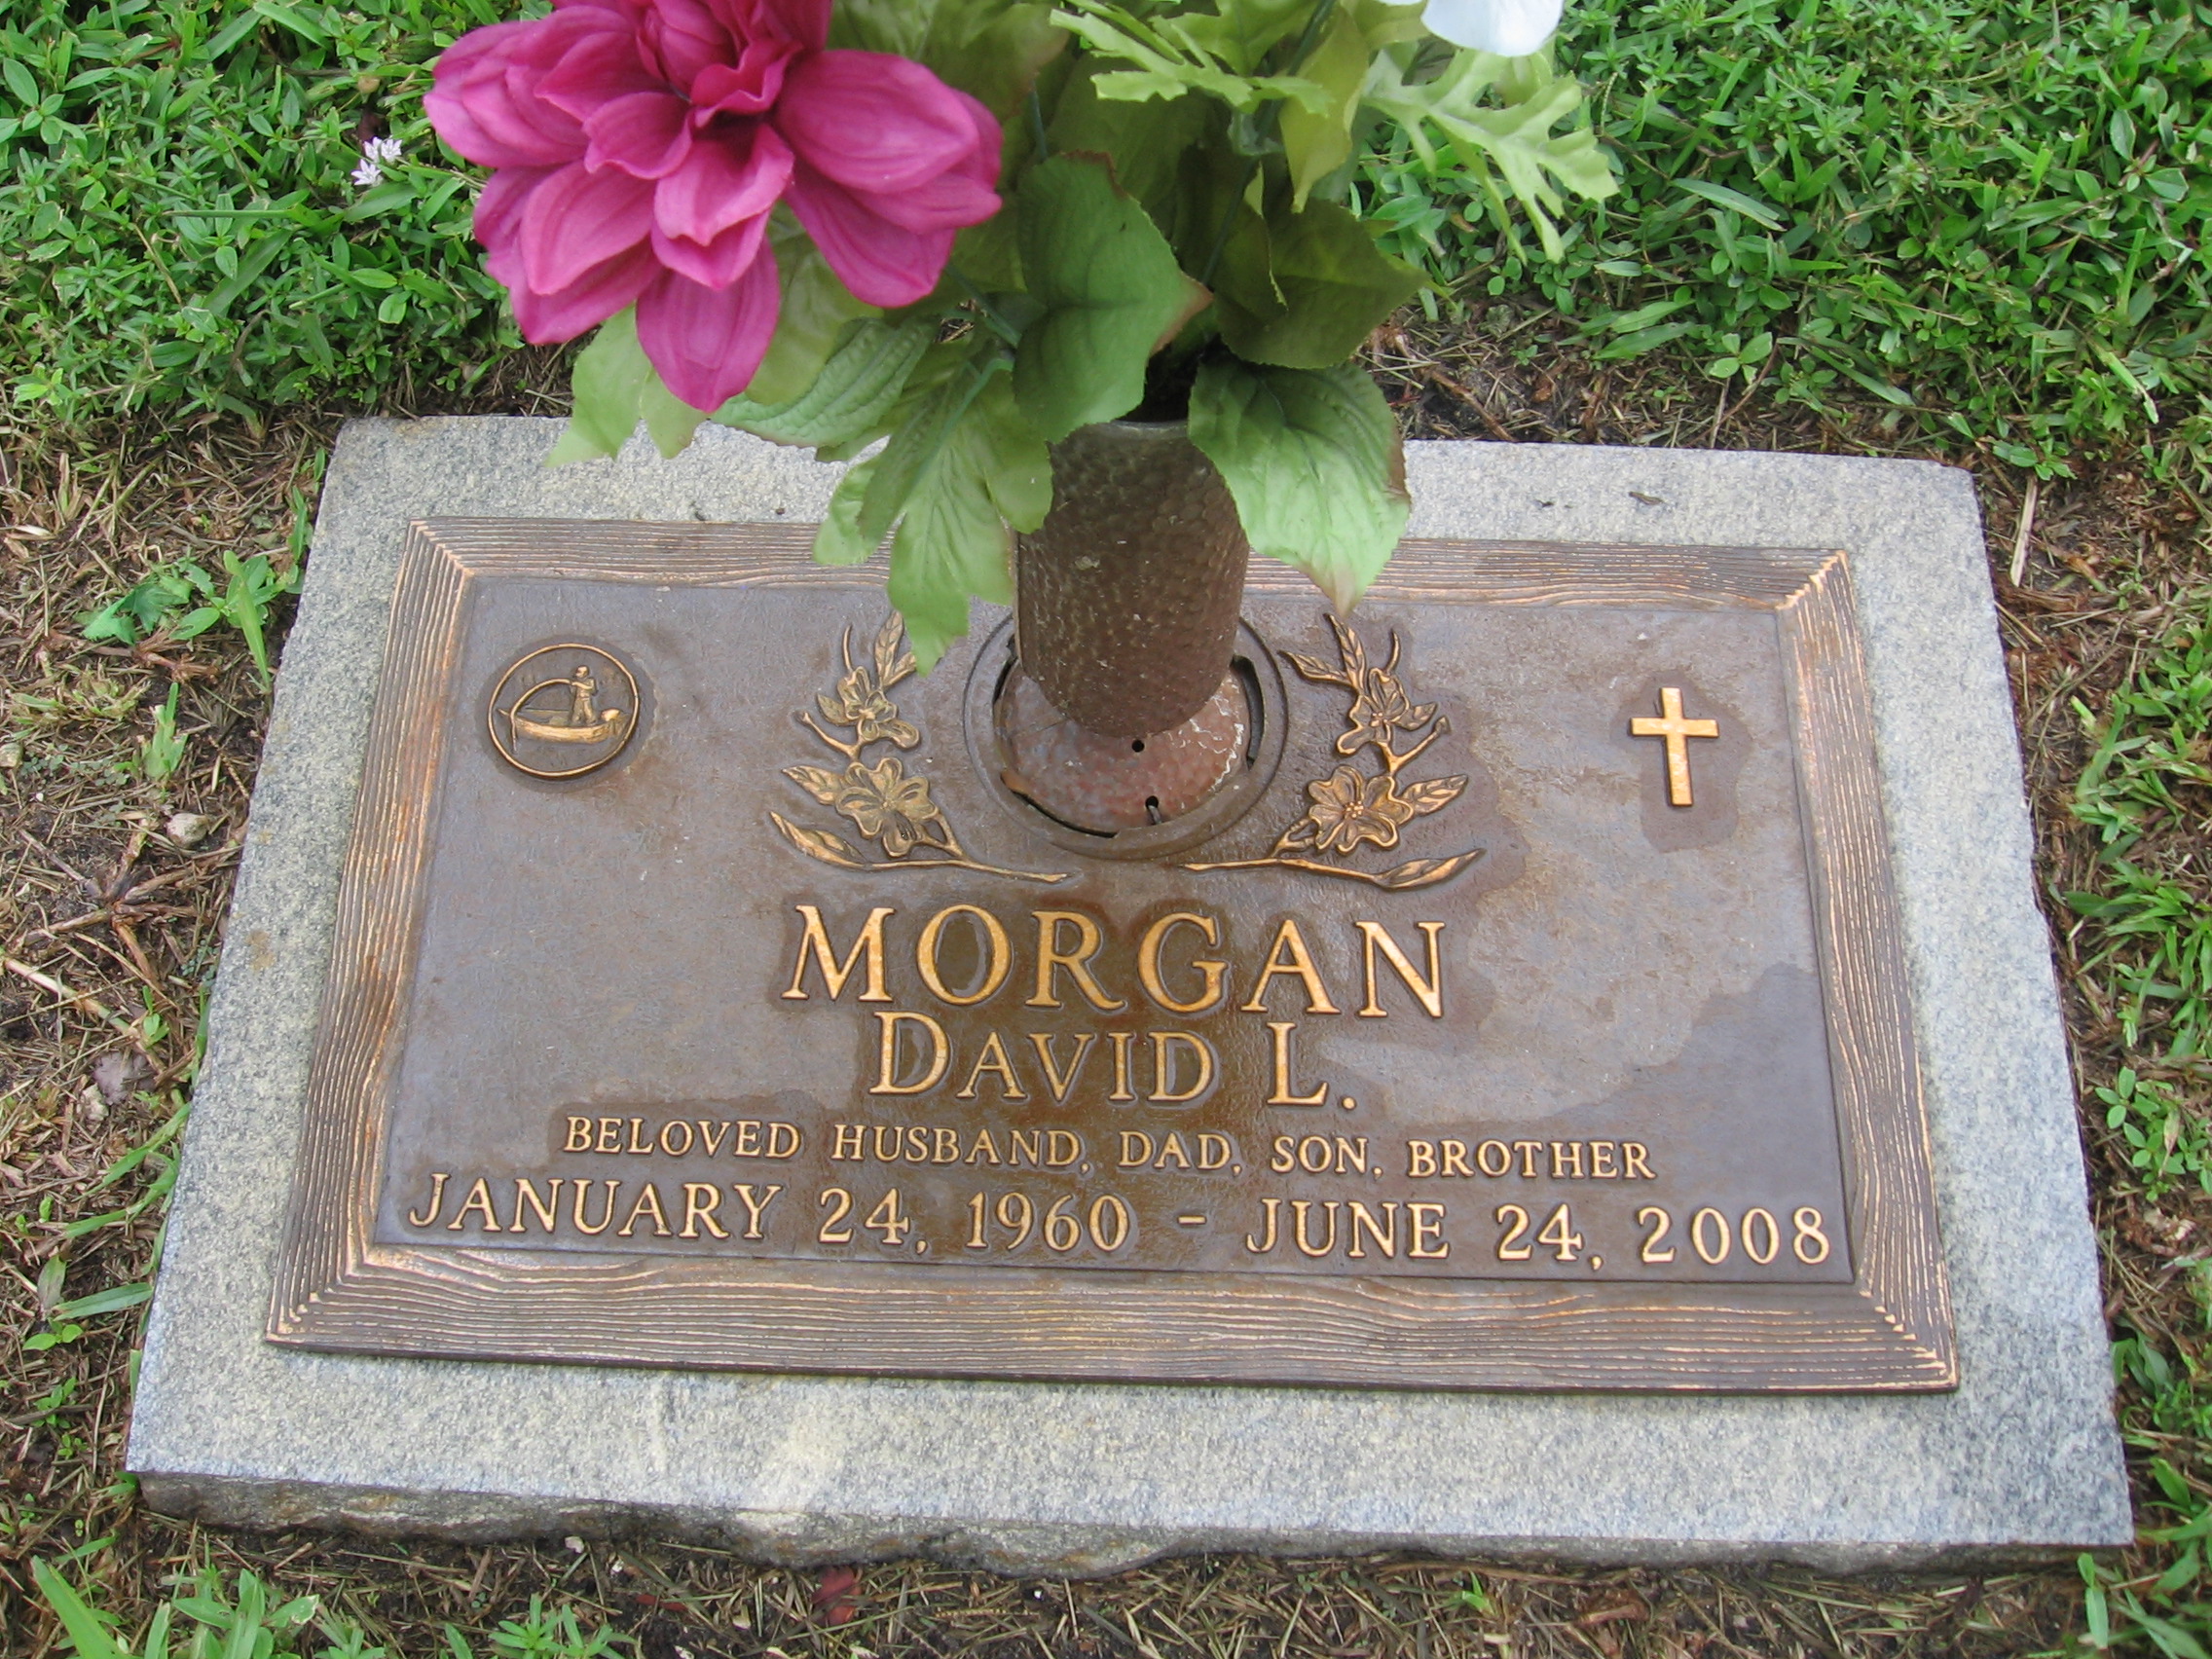 David L Morgan